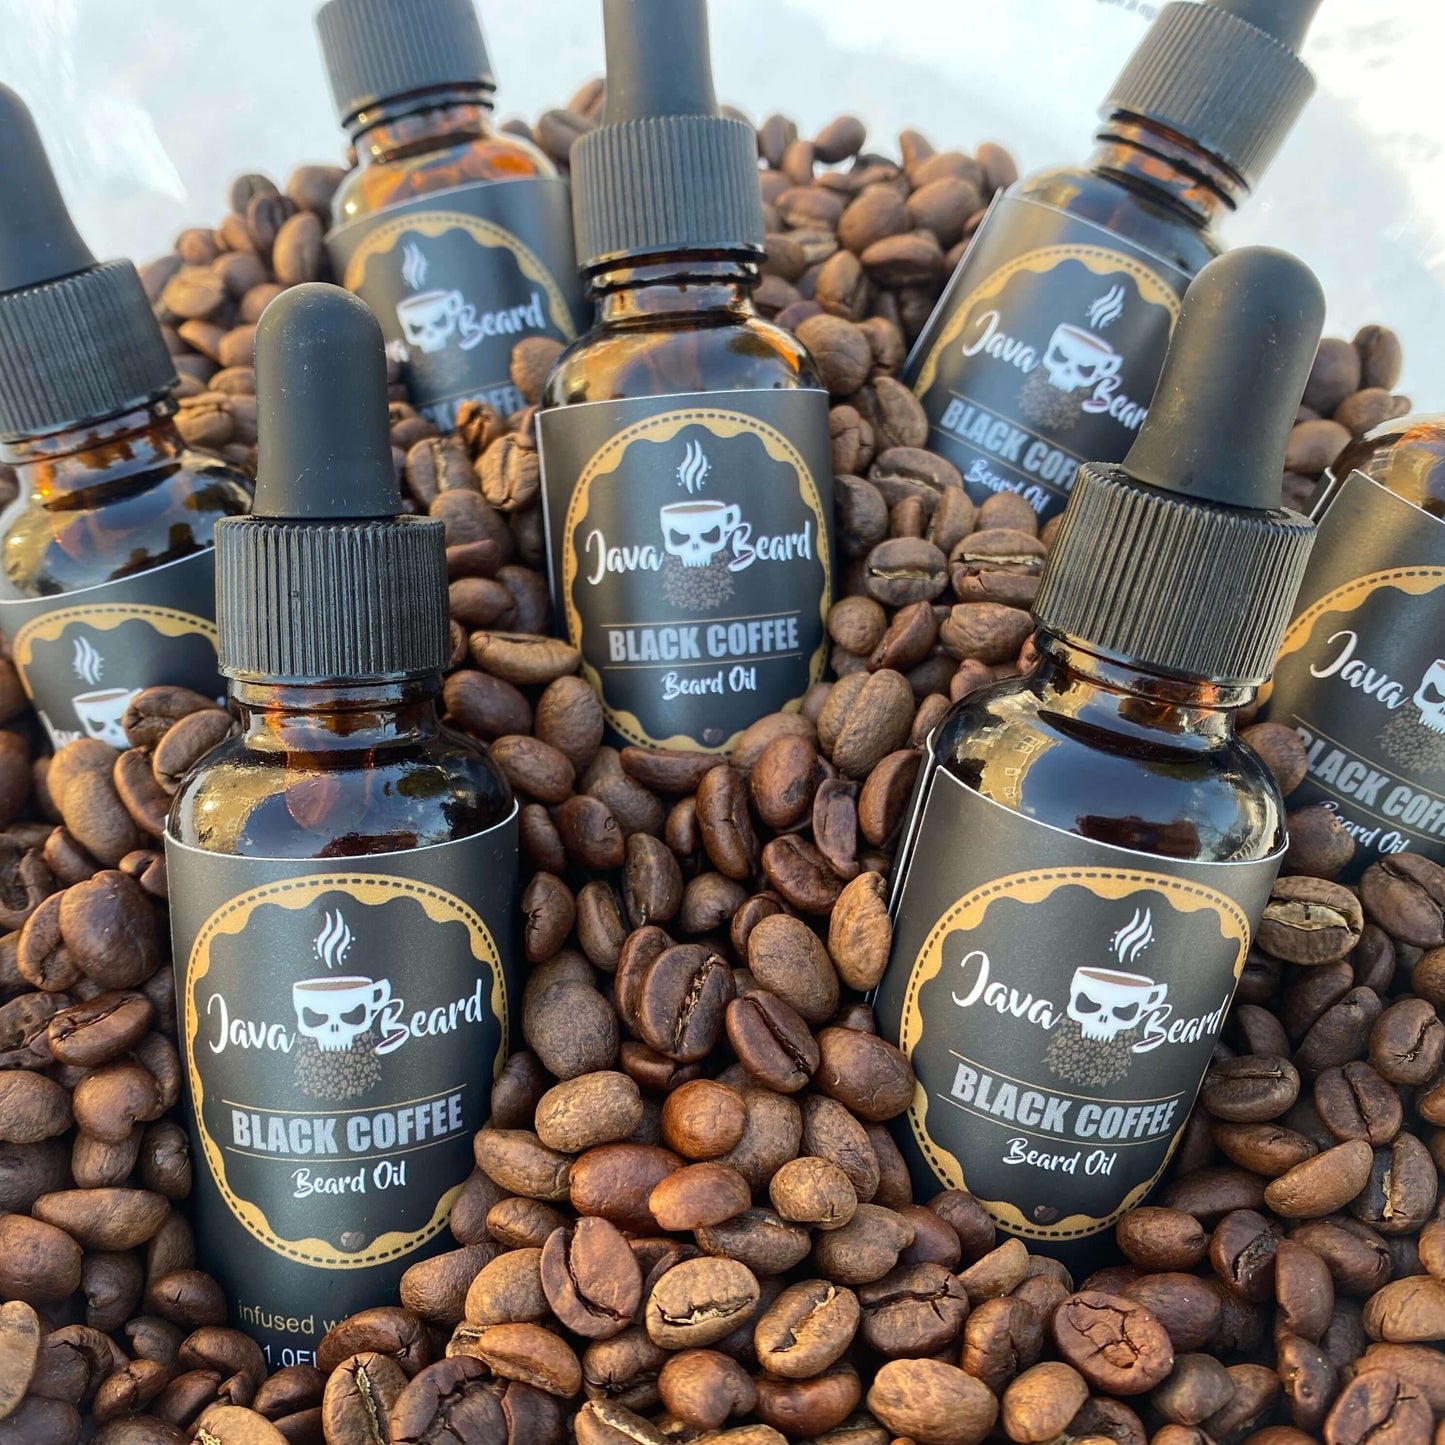 Java Beard Black Coffee Beard Oil